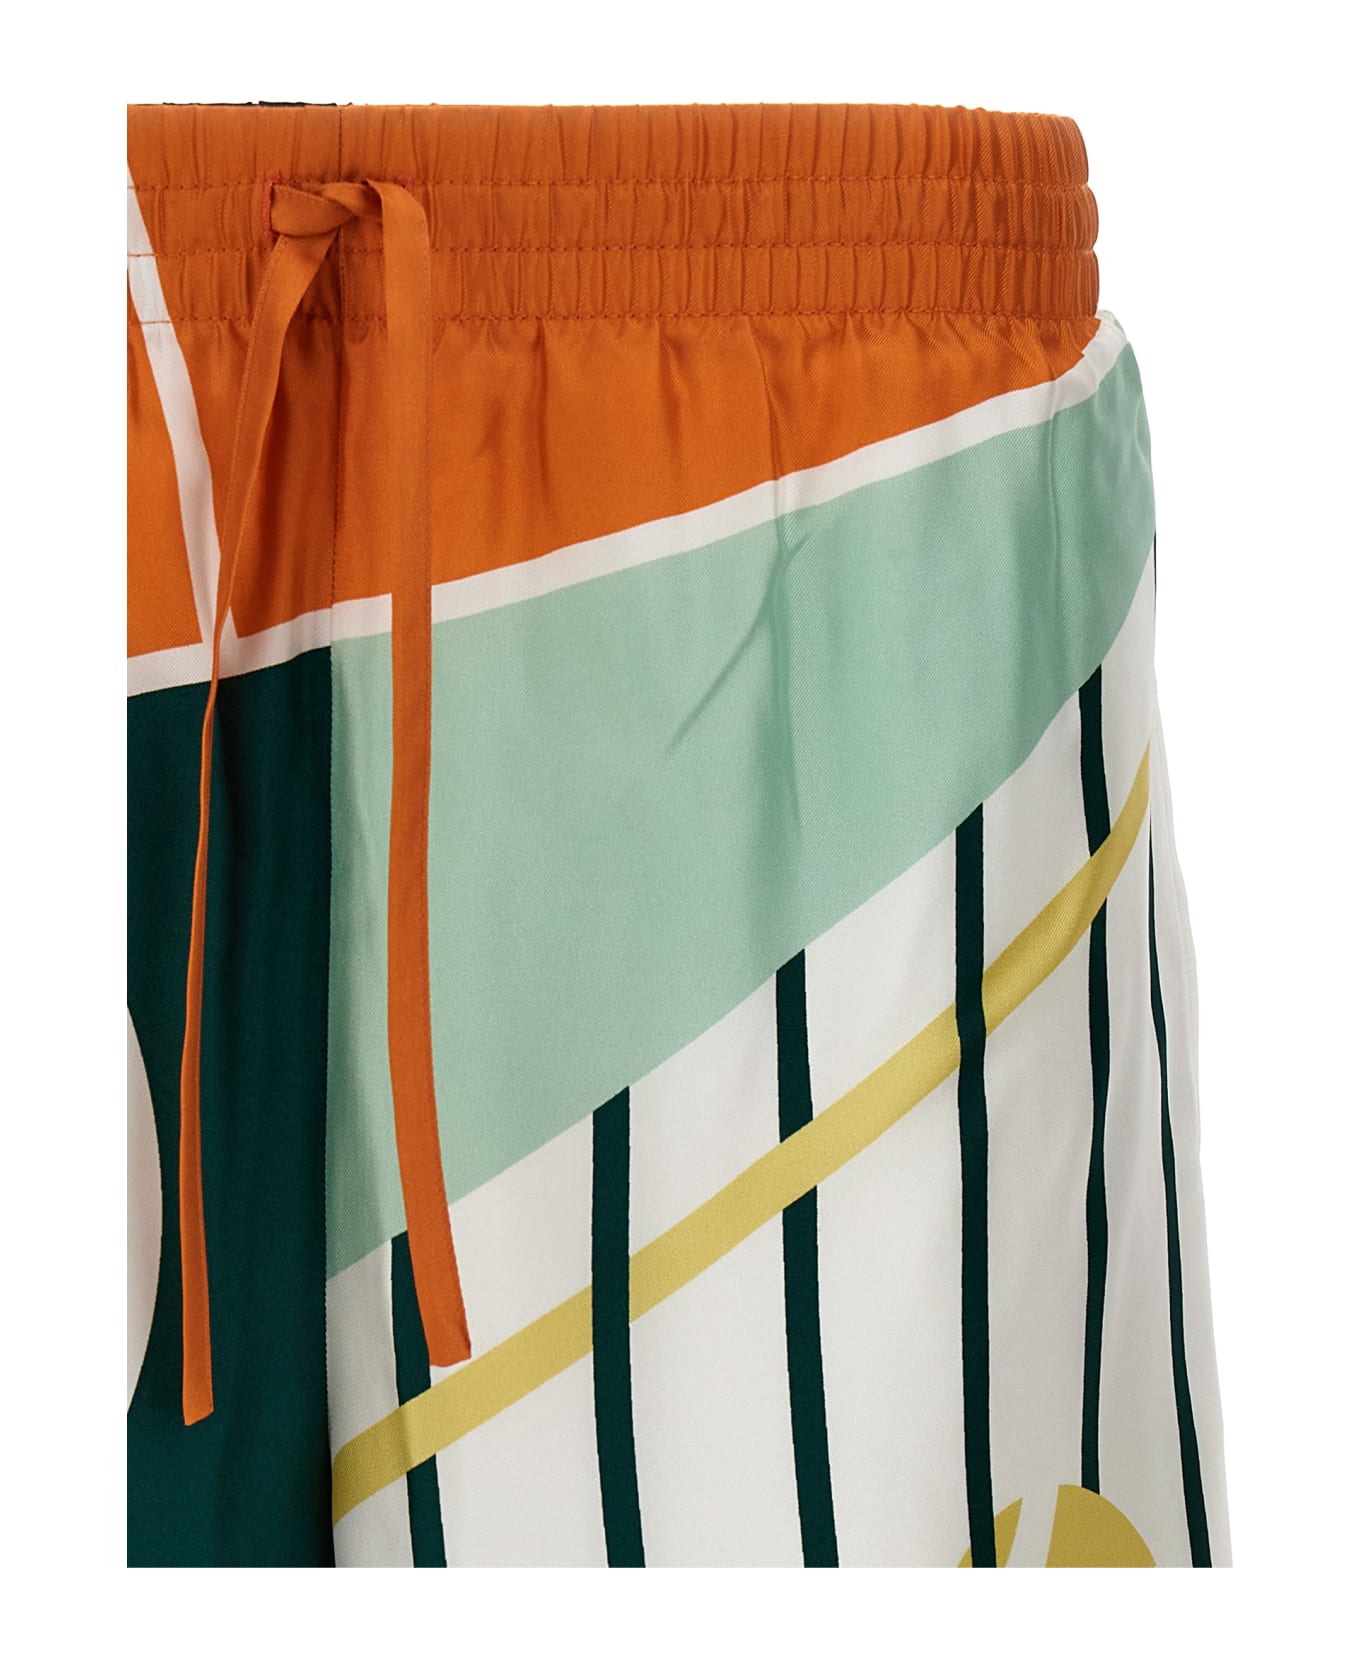 Casablanca 'court Abstrait' Bermuda Shorts - Multicolor